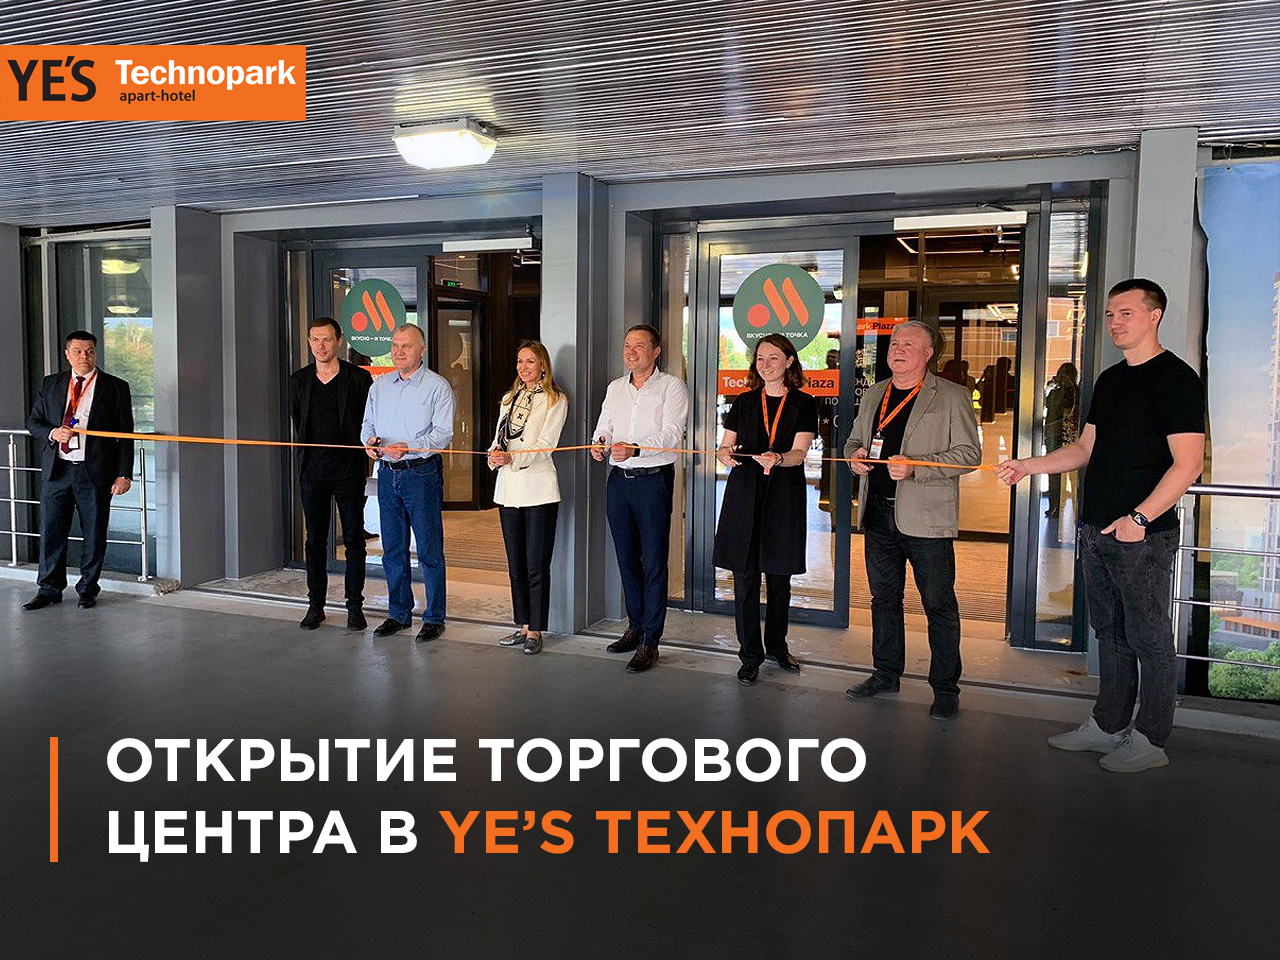 В YE’S Technopark открывается торговая галерея!